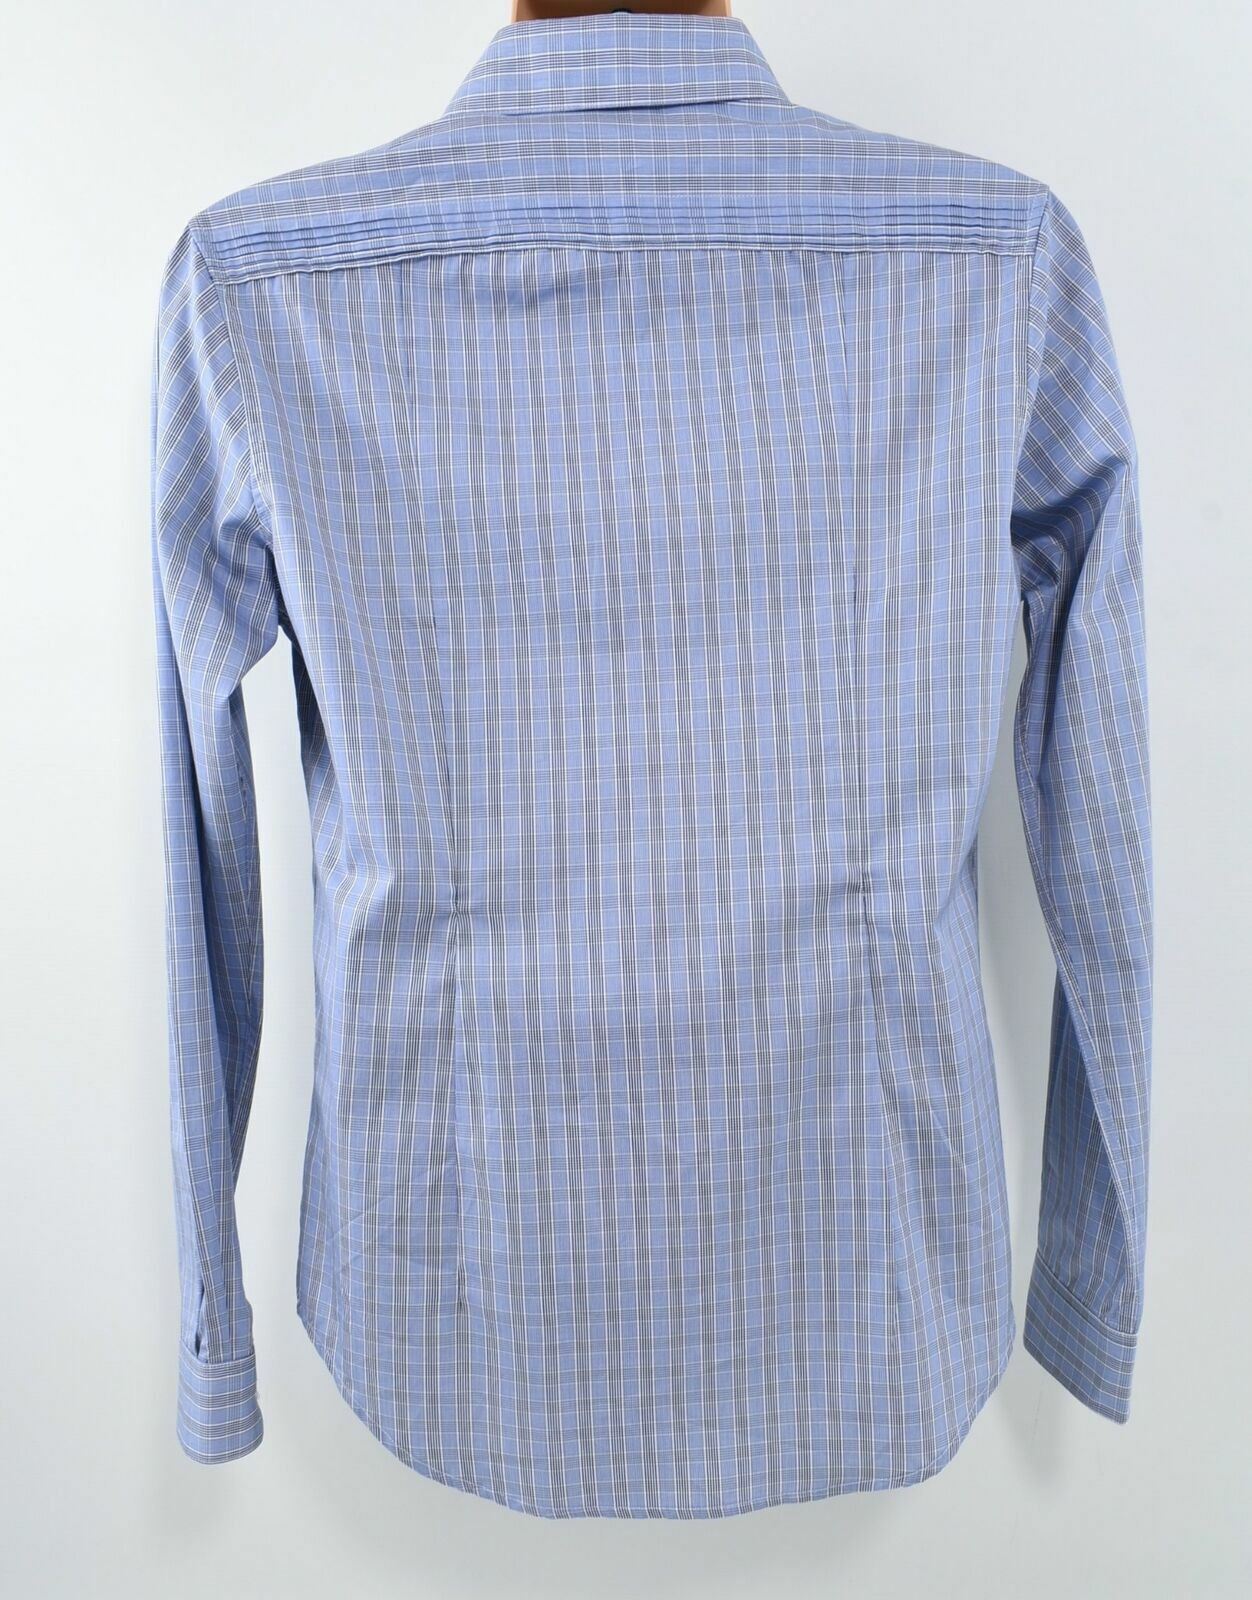 KARL LAGERFELD Men's Blue Checked Long Sleeved Shirt- size L / UK 40